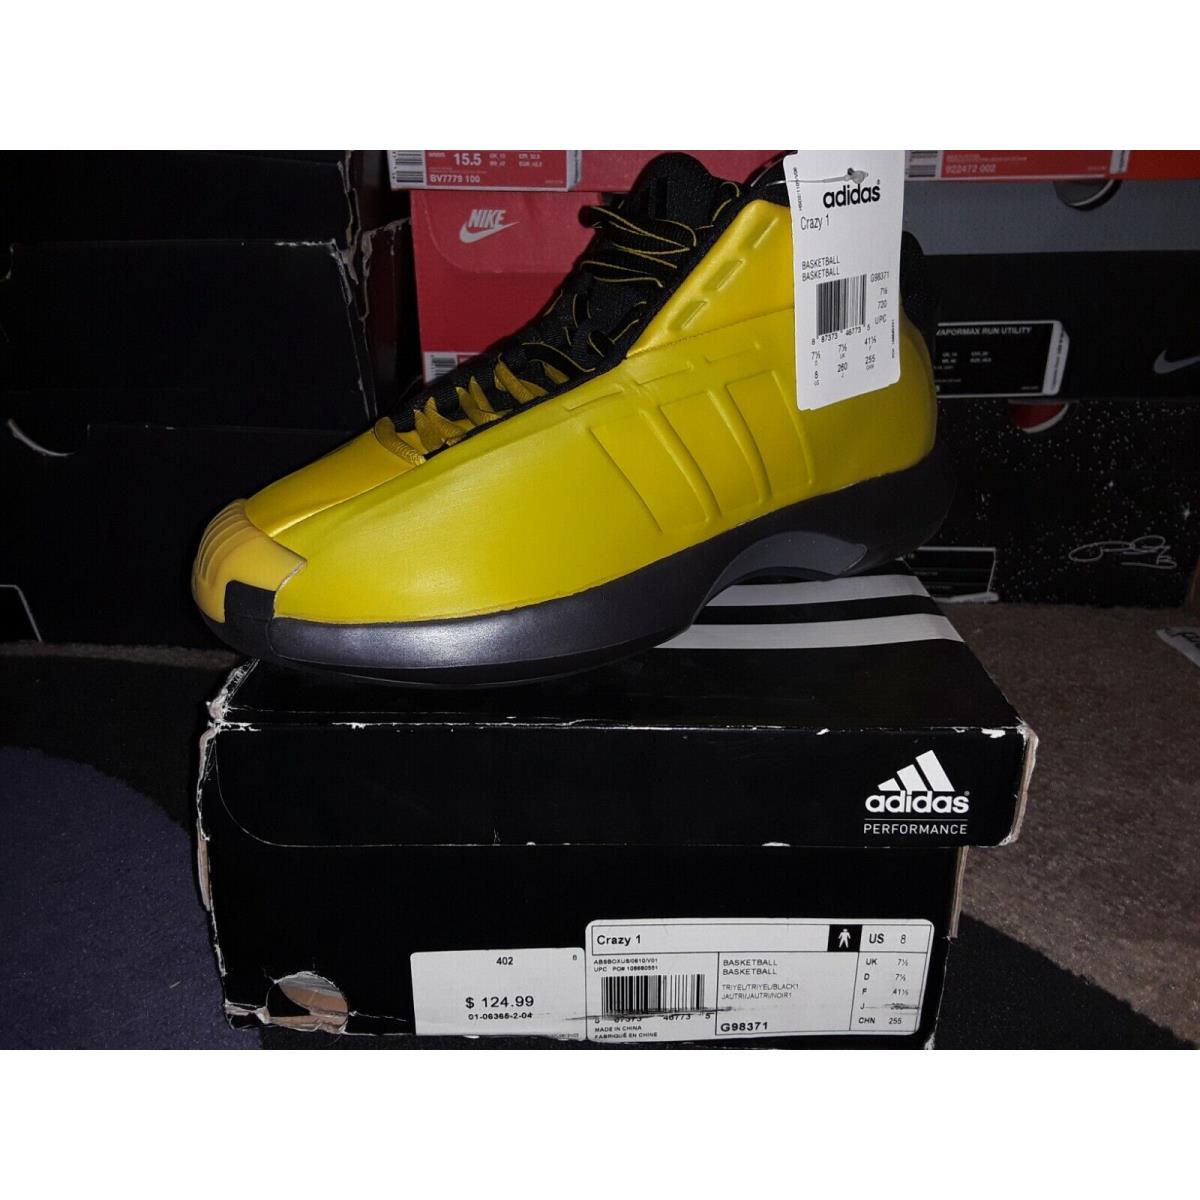 Adidas Crazy 1 Retro 8 Kobe Bryant 24 Lakers Sunshine Amputee Left Shoe 2 G98371